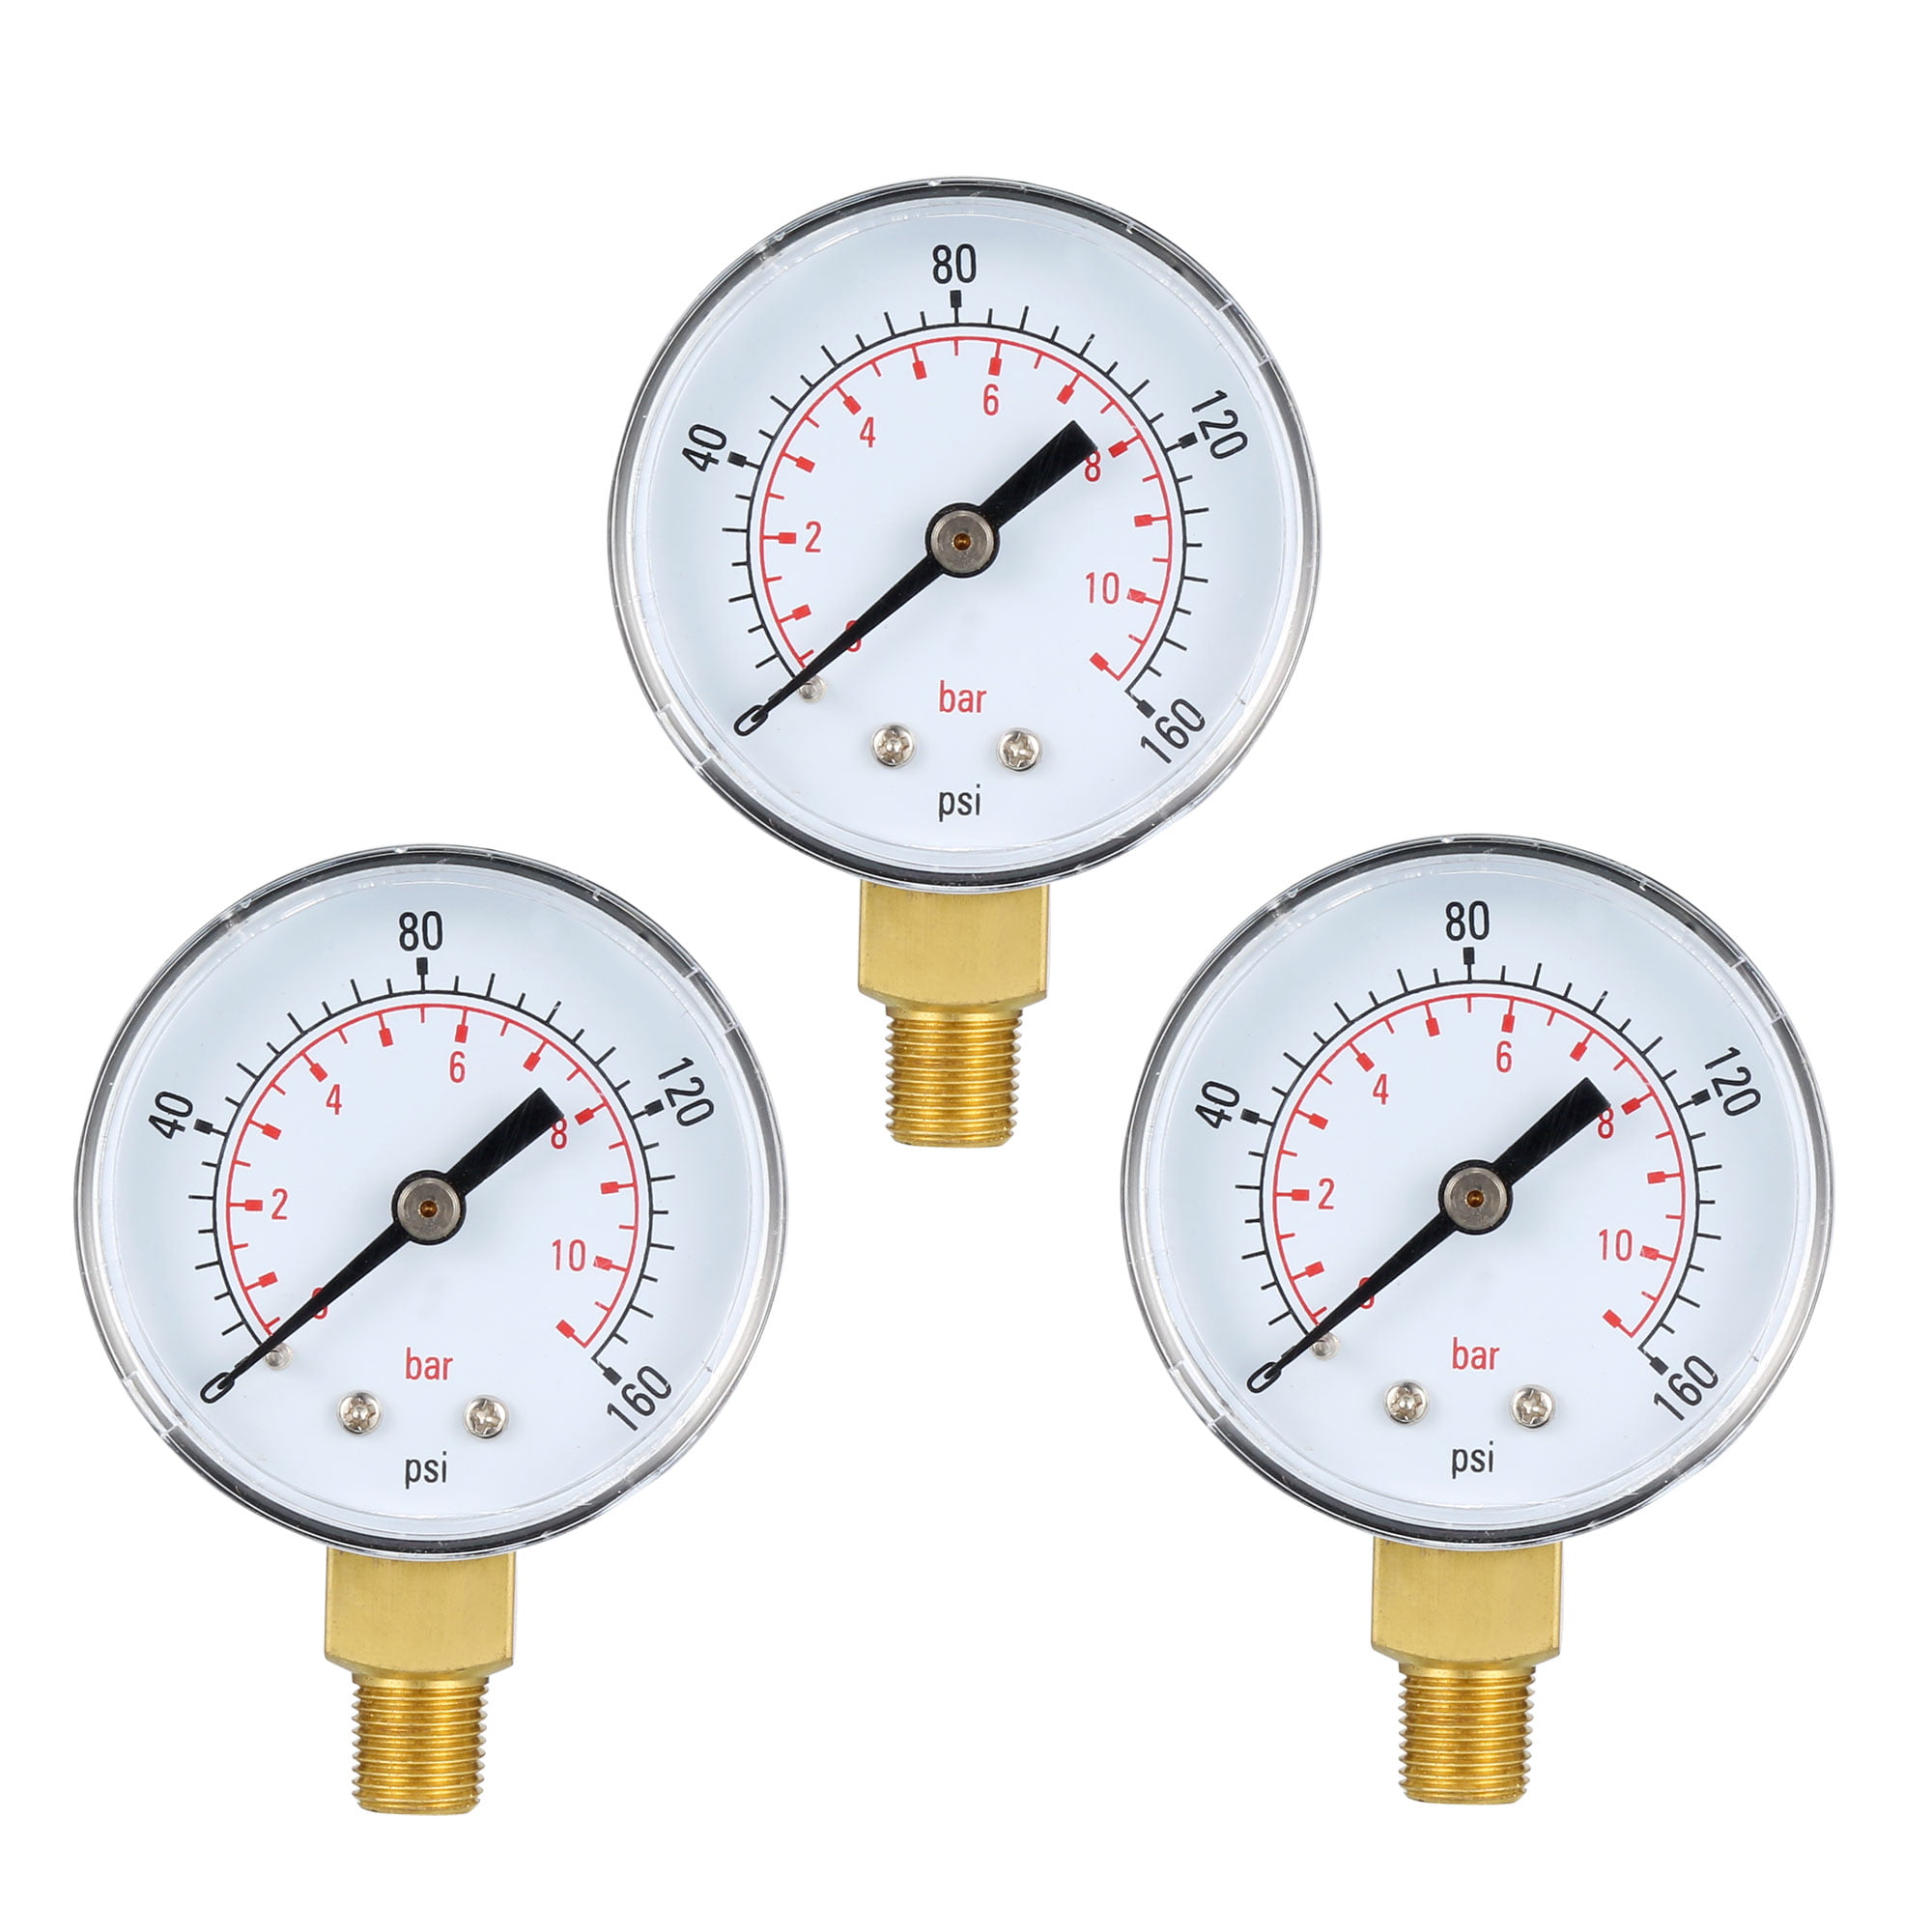 Pressure Gauge 1/8NPT Mini Pressure Gauge for Water Fuel Oil air 0-160 psi/0-10 bar NPT Thread 1/8 inch Pressure Gauge 